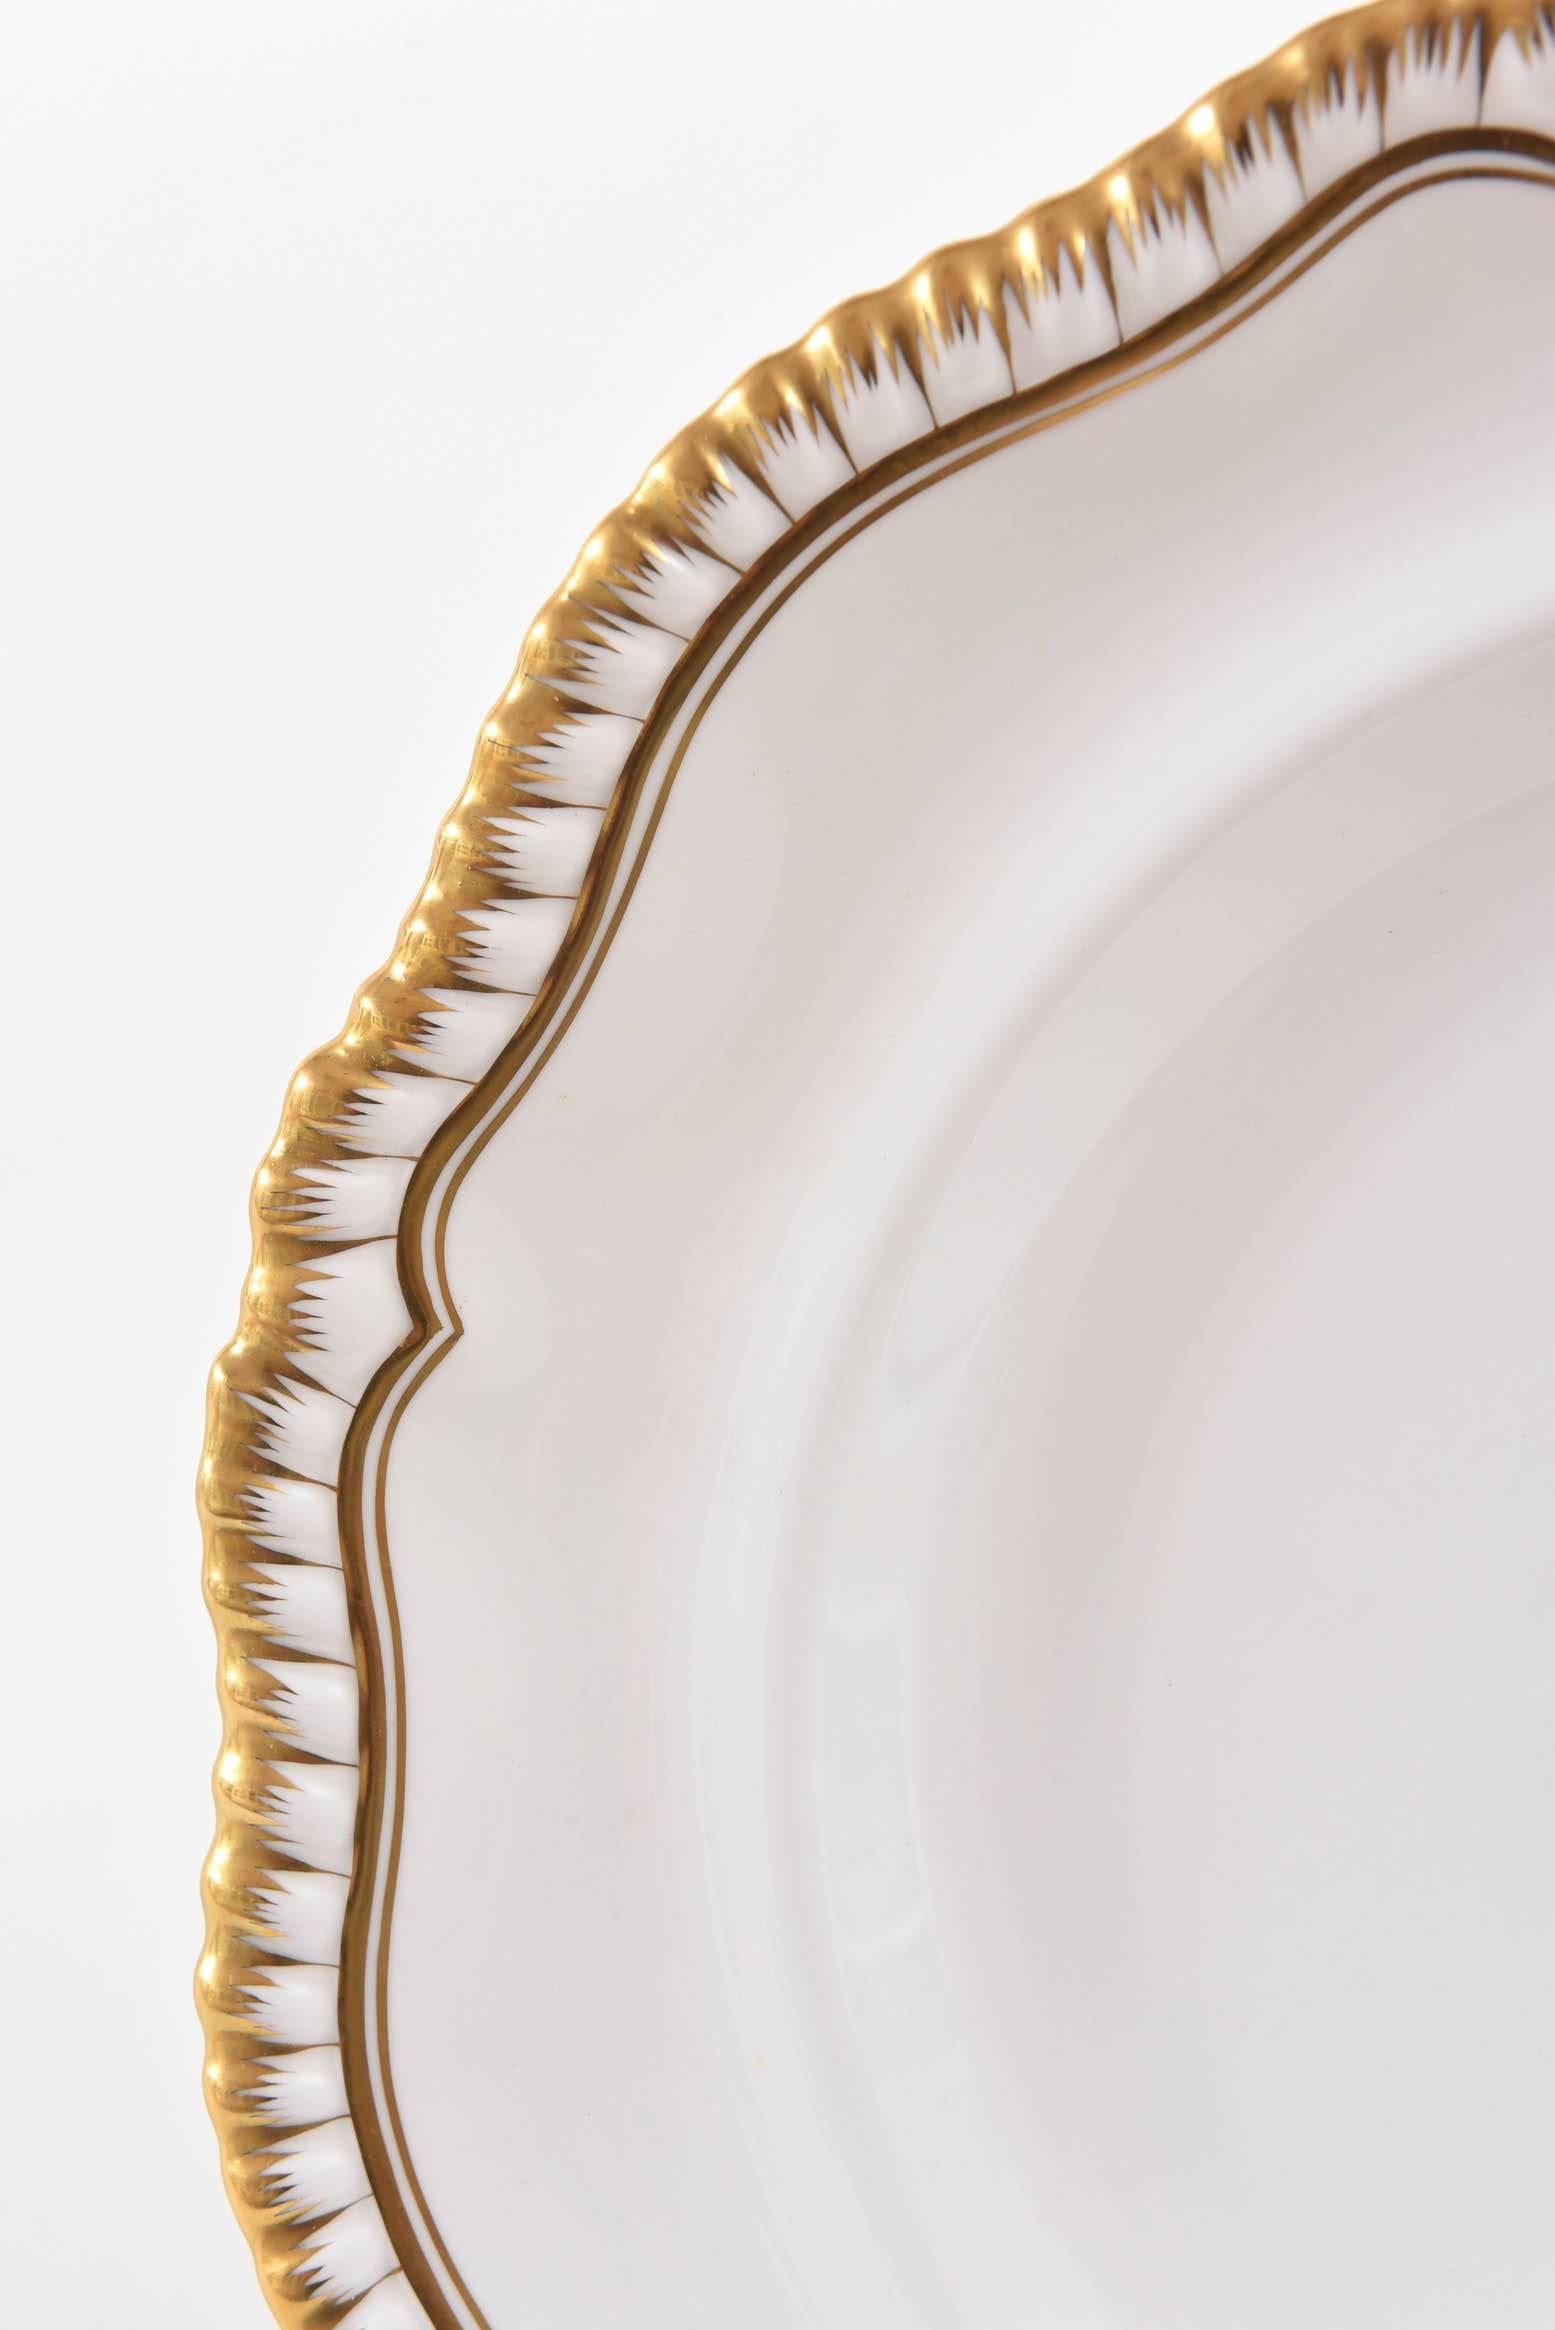 Regency 12 Elegant Antique Dinner Plates, Spode England, Gilt Scalloped Edge